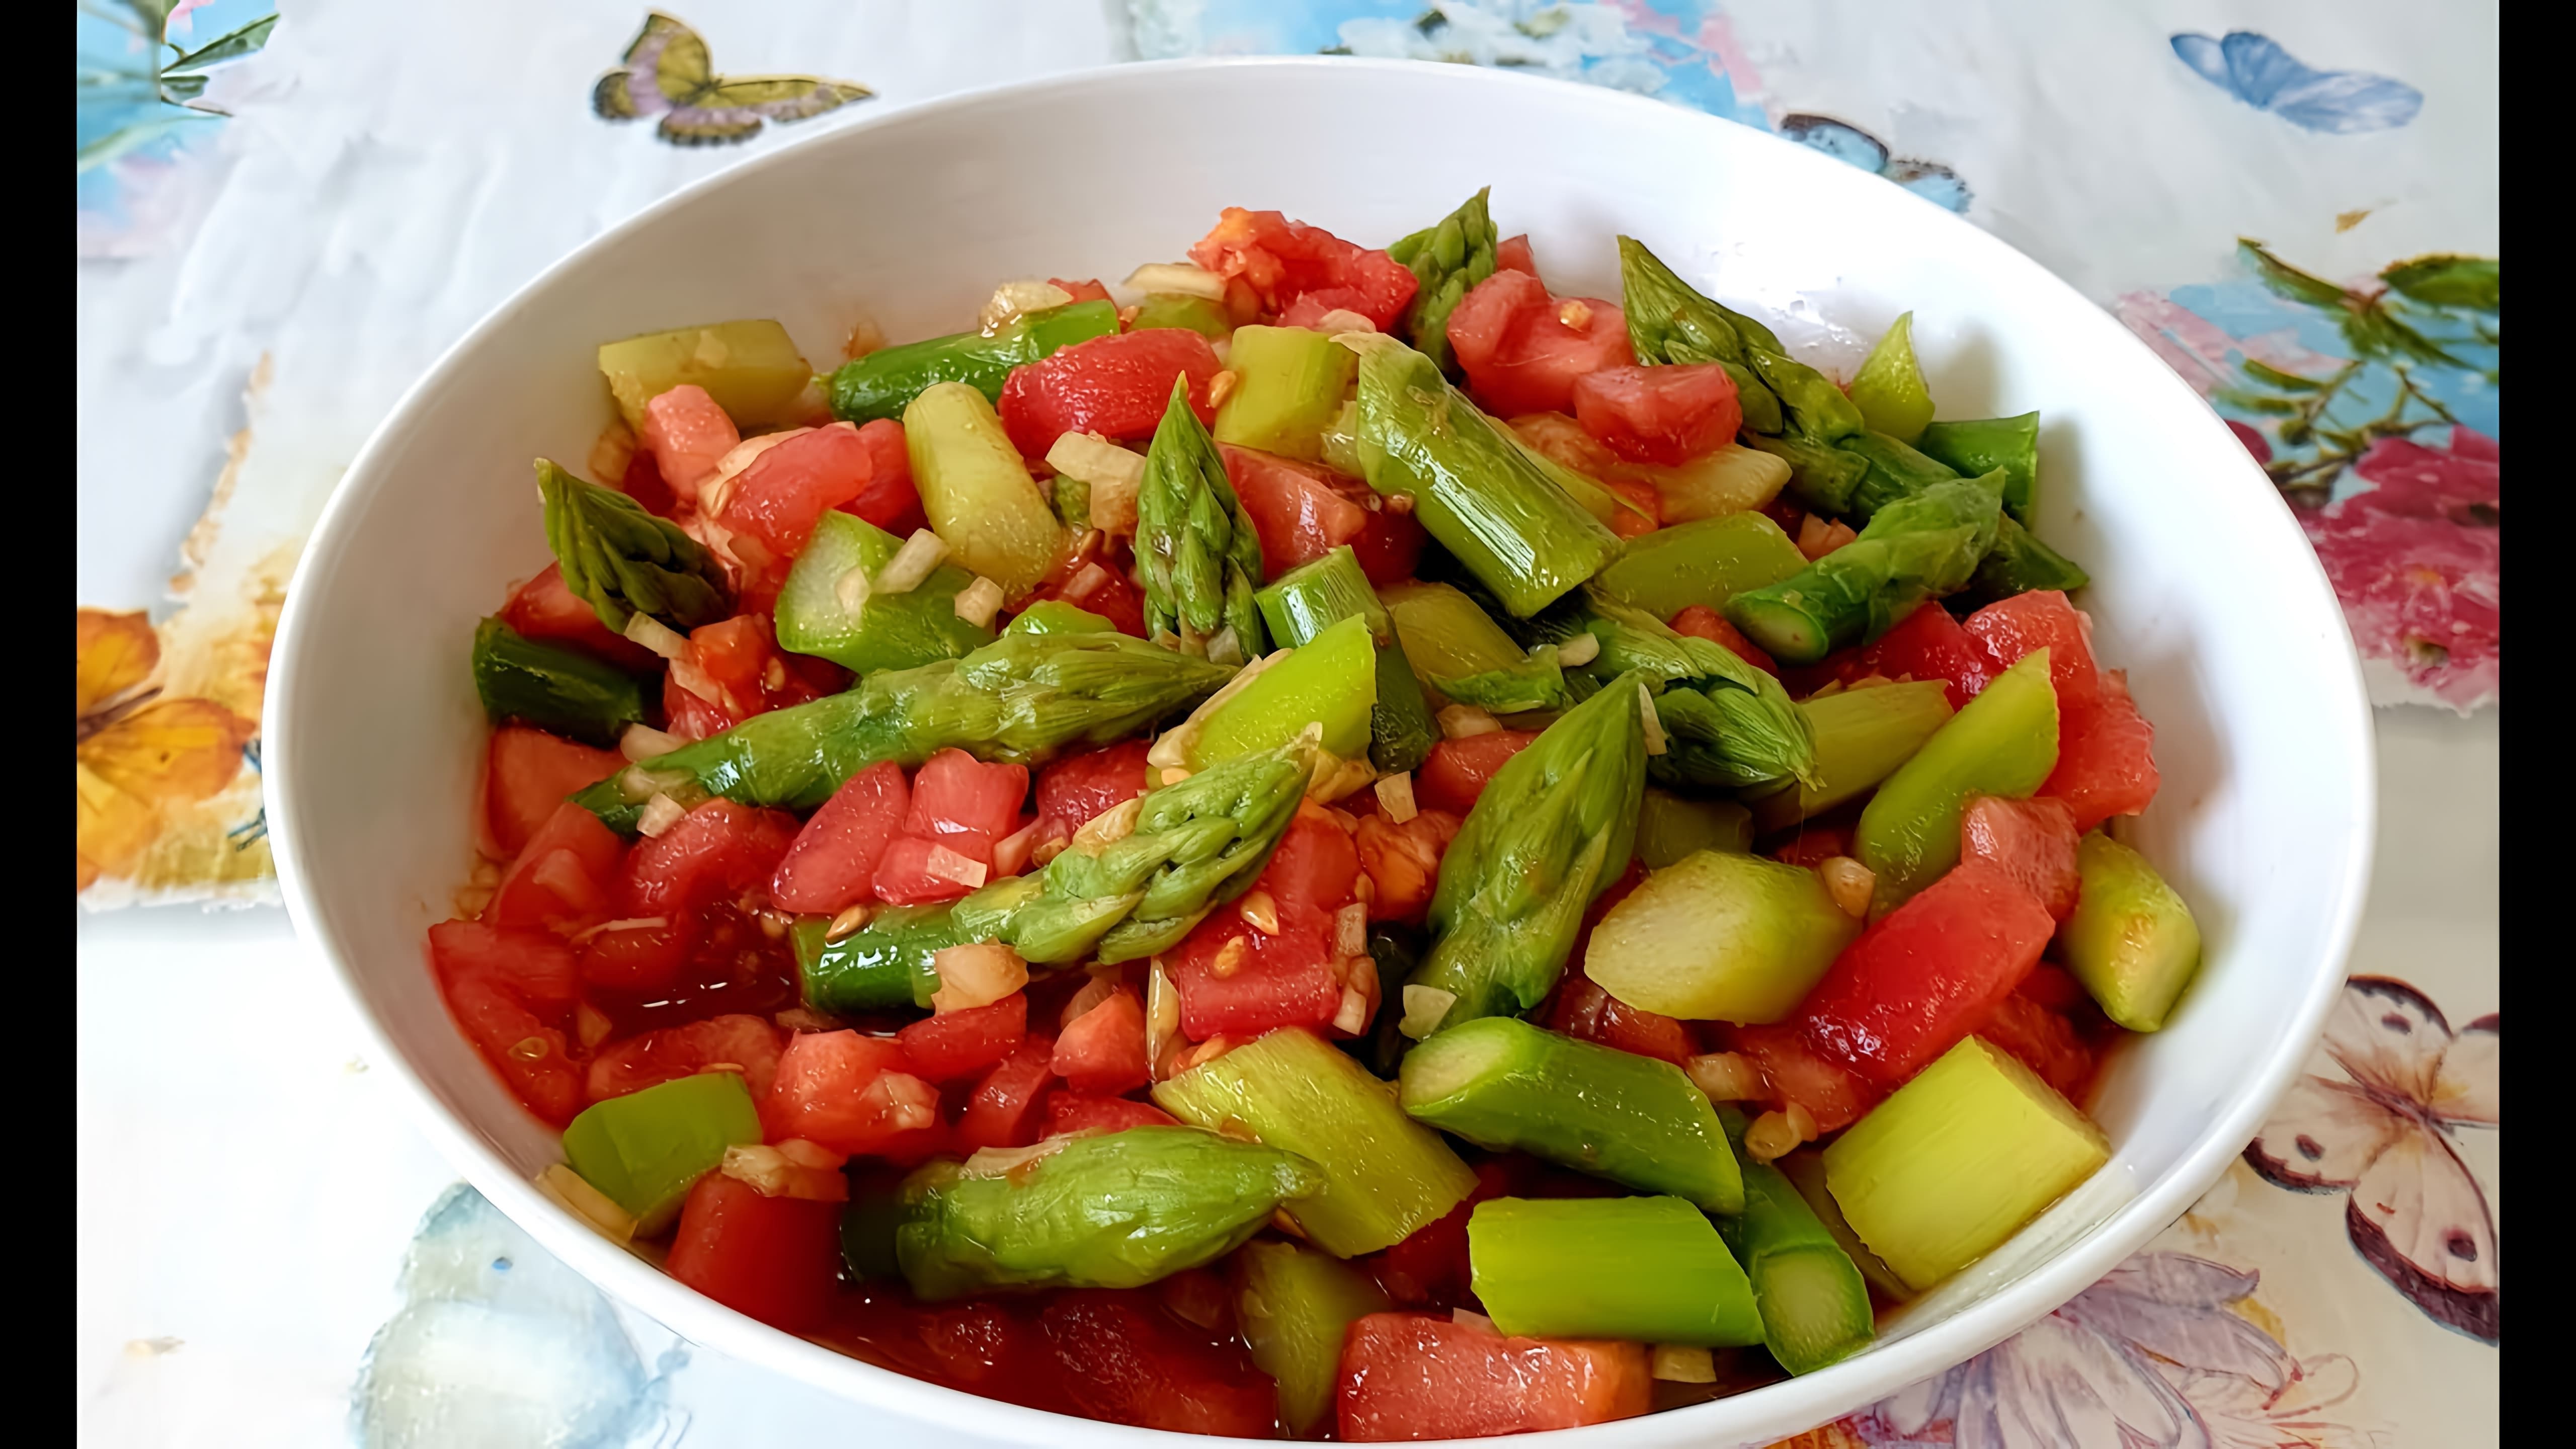 В этом видео демонстрируется процесс приготовления салата из зеленой спаржи и помидоров